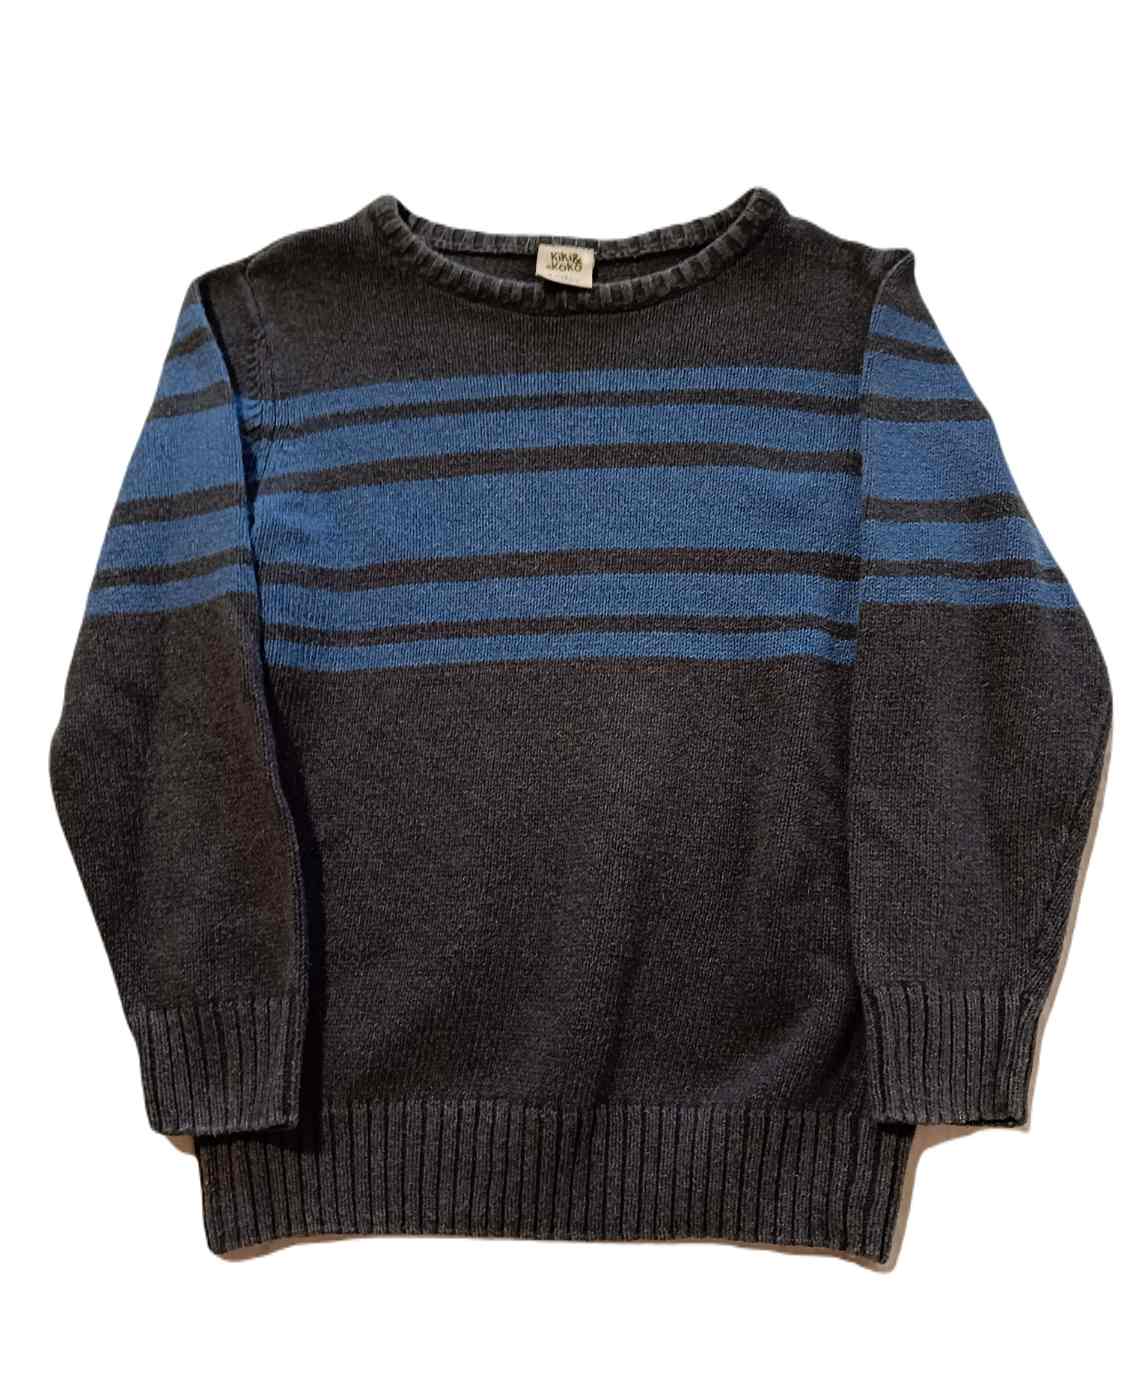 Chlapecký svetr s proužkem 110